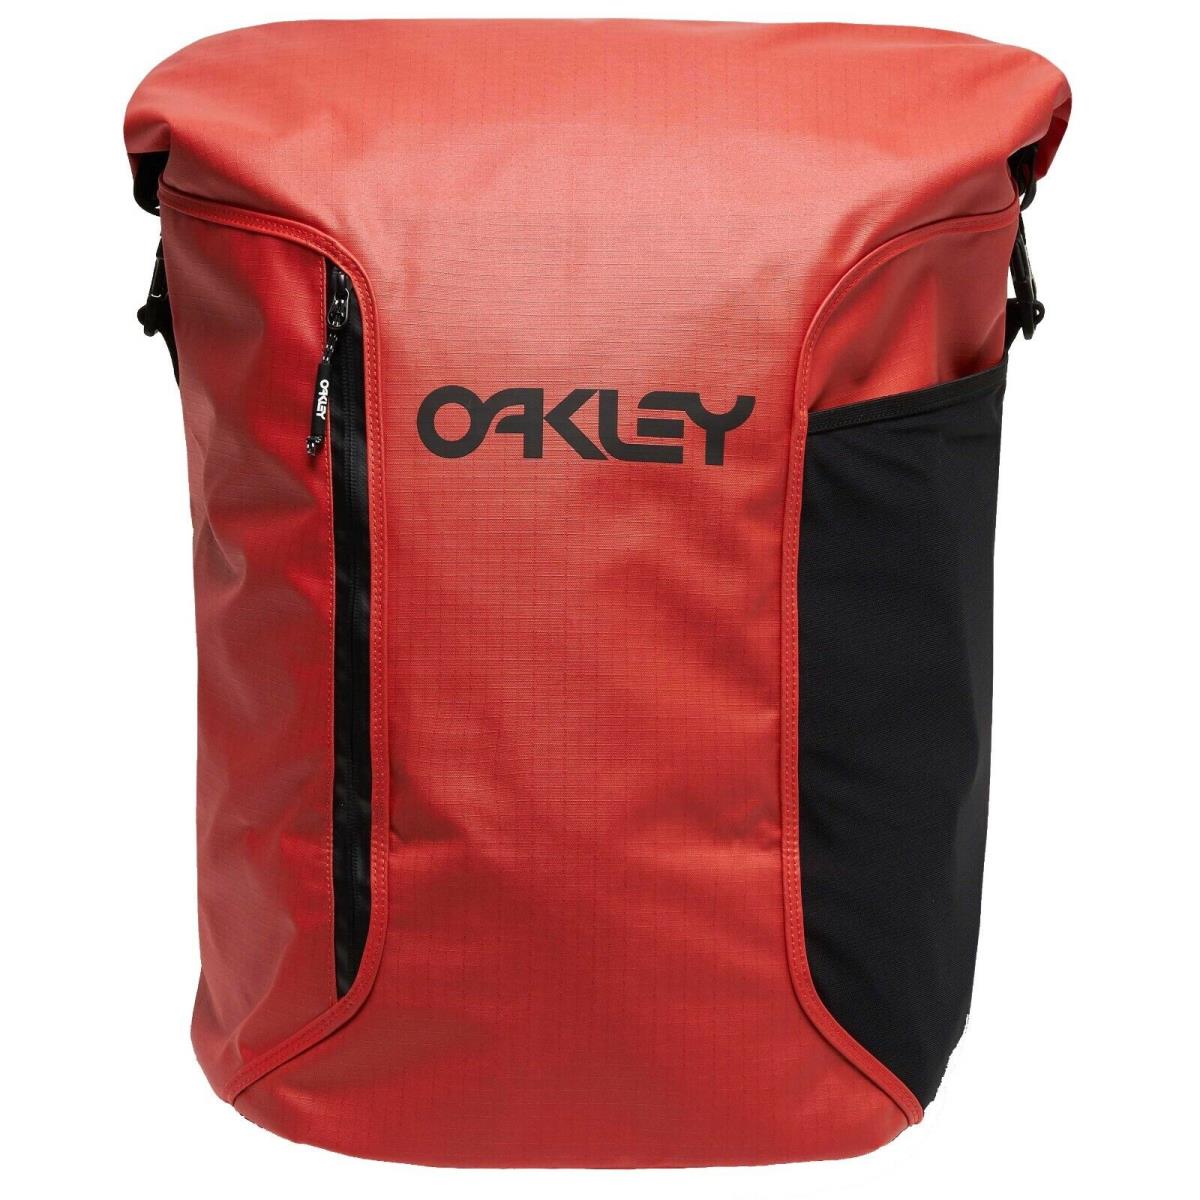 Oakley Mens Wet Dry Surf Bag Backpack Unisex Padded Surfing Travel